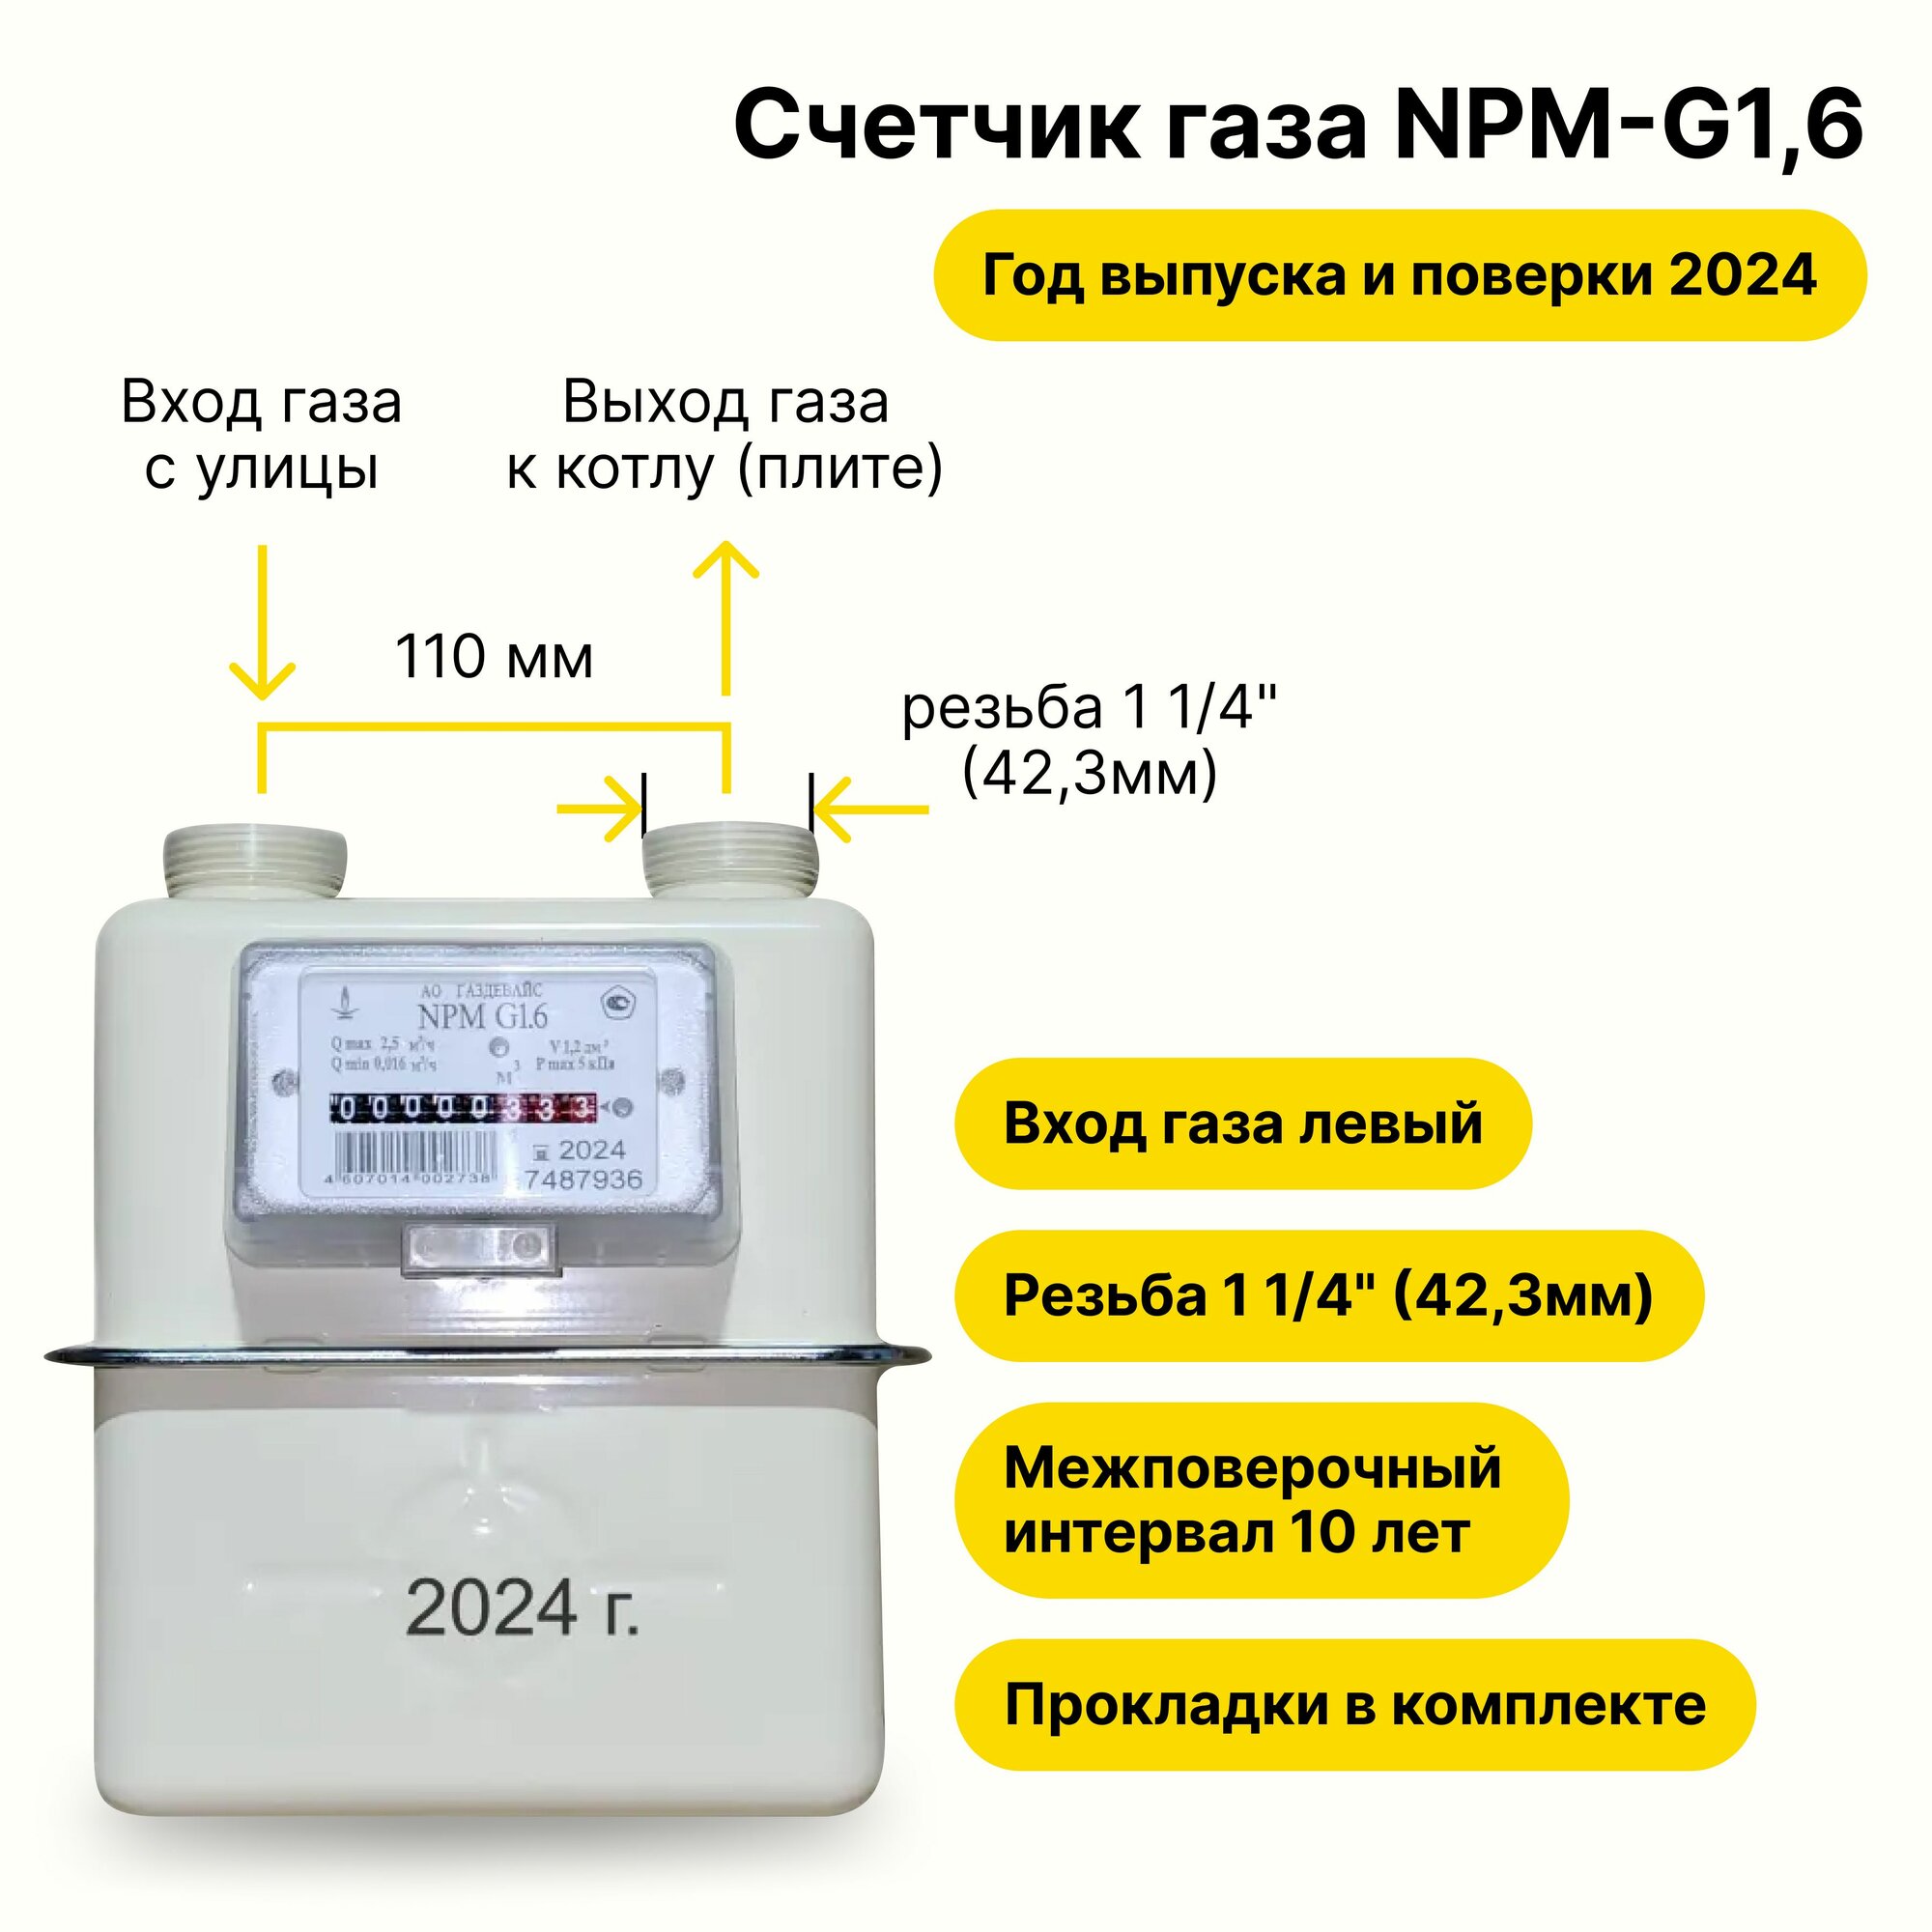 NPM-G1,6 (вход газа левый -->, резьба 1 1/4", прокладки В комплекте) 2024 года выпуска и поверки